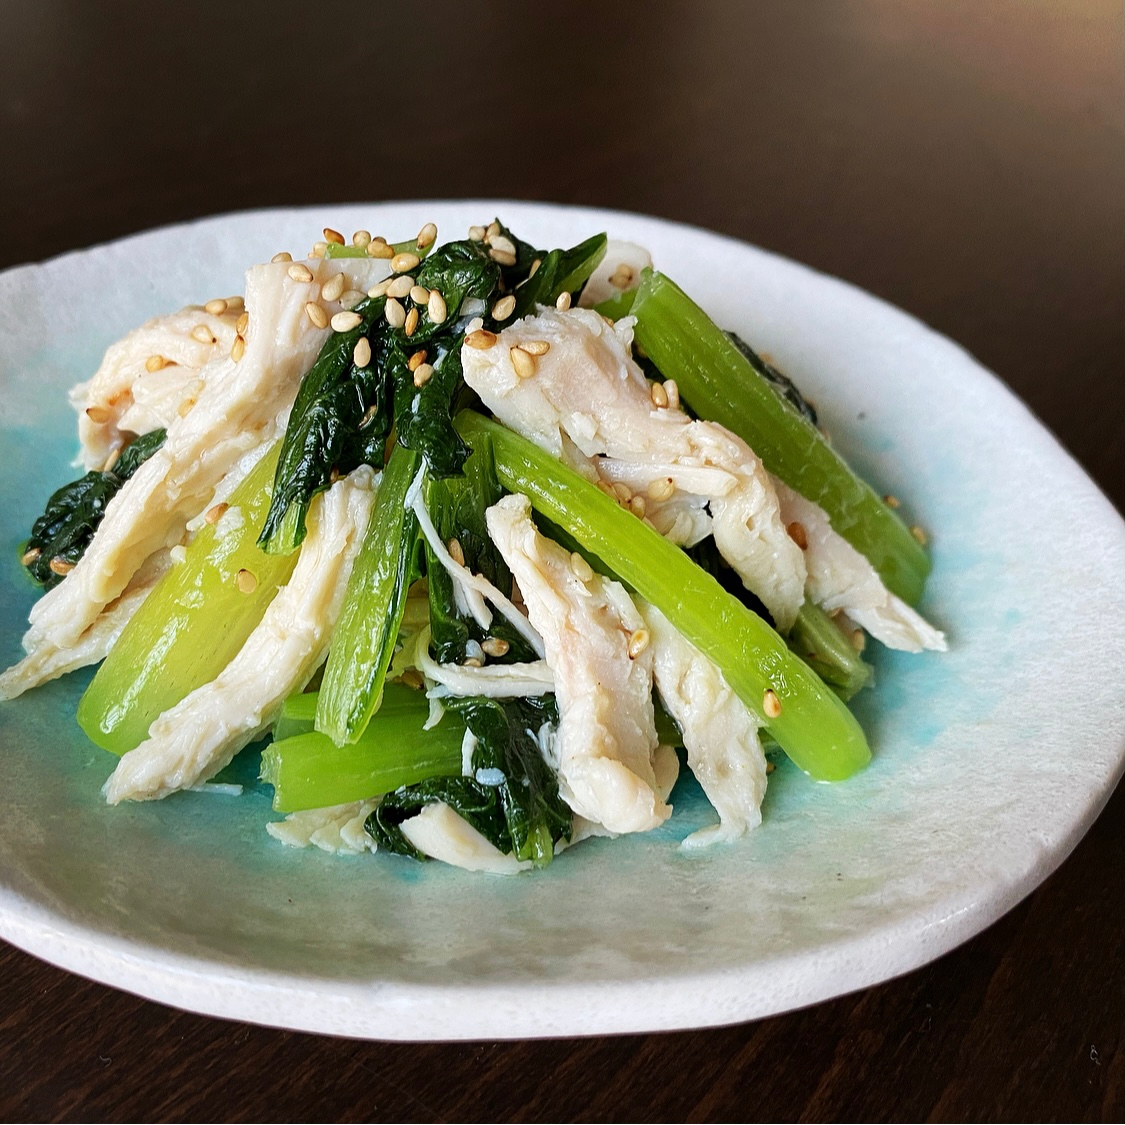 レンジで簡単‼栄養満点な小松菜と胸肉のナムル風